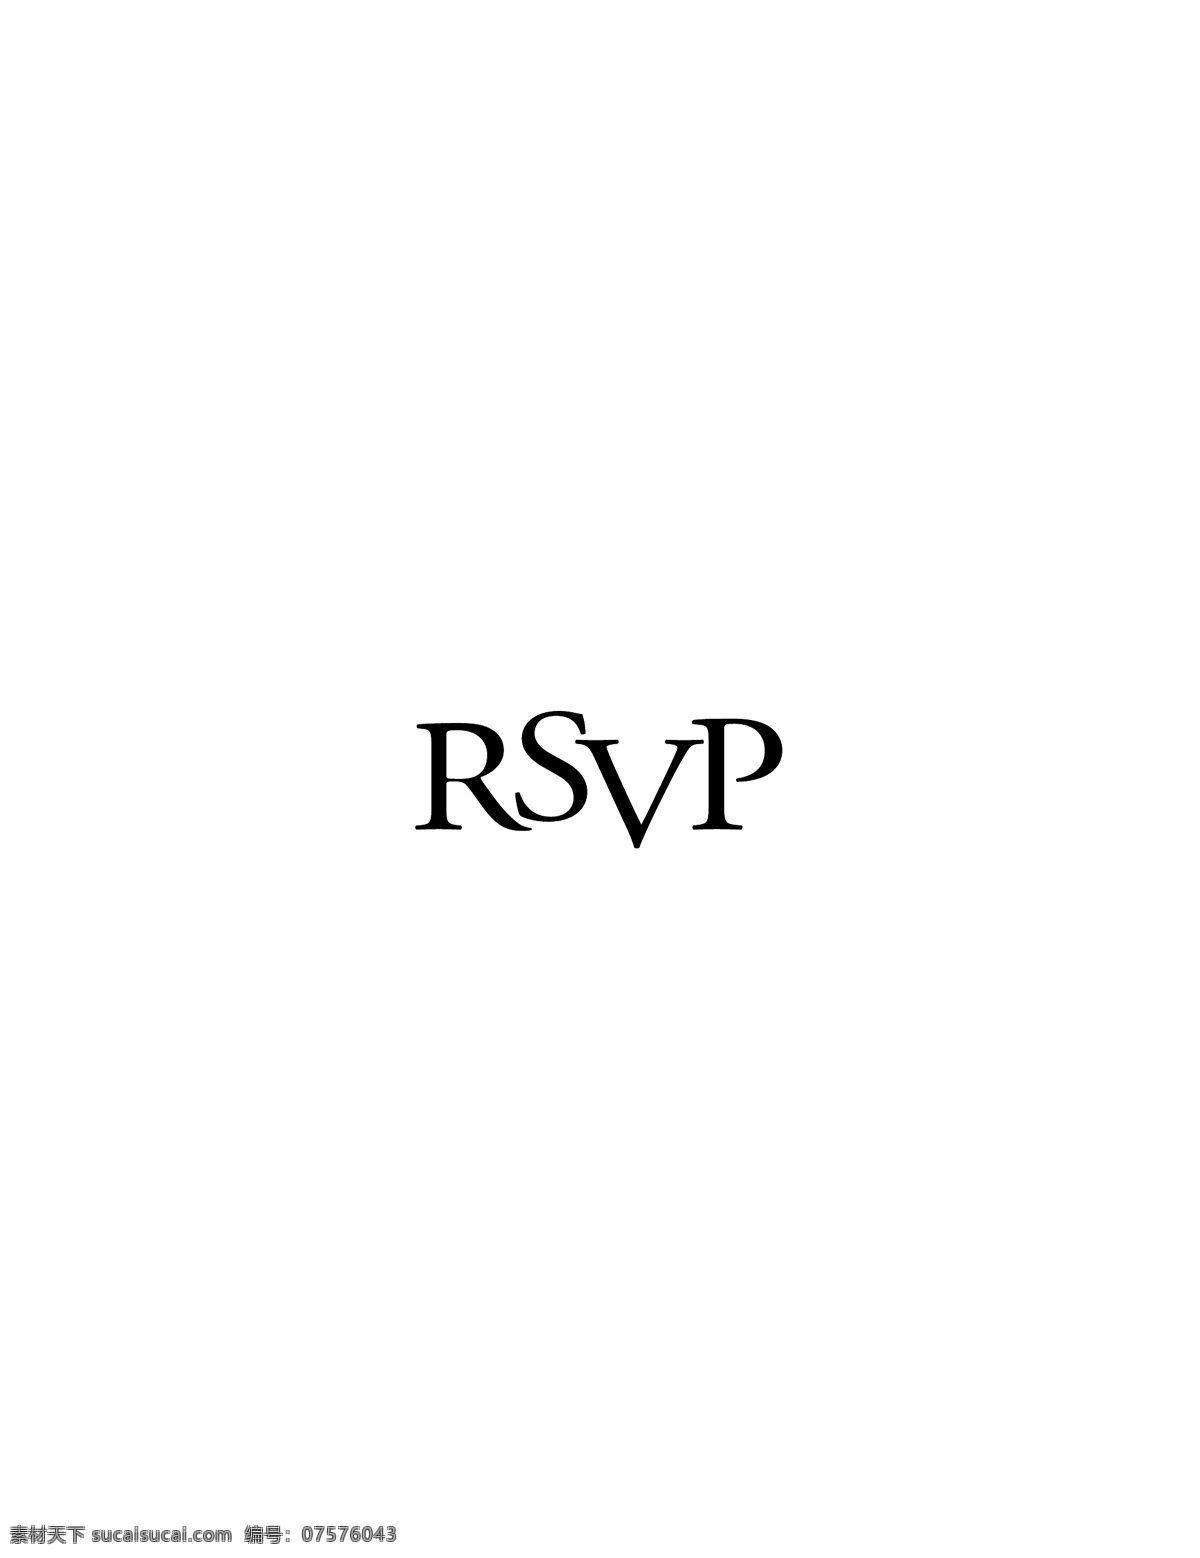 rsvp logo大全 logo 设计欣赏 商业矢量 矢量下载 网站标志设计 标志设计 欣赏 网页矢量 矢量图 其他矢量图